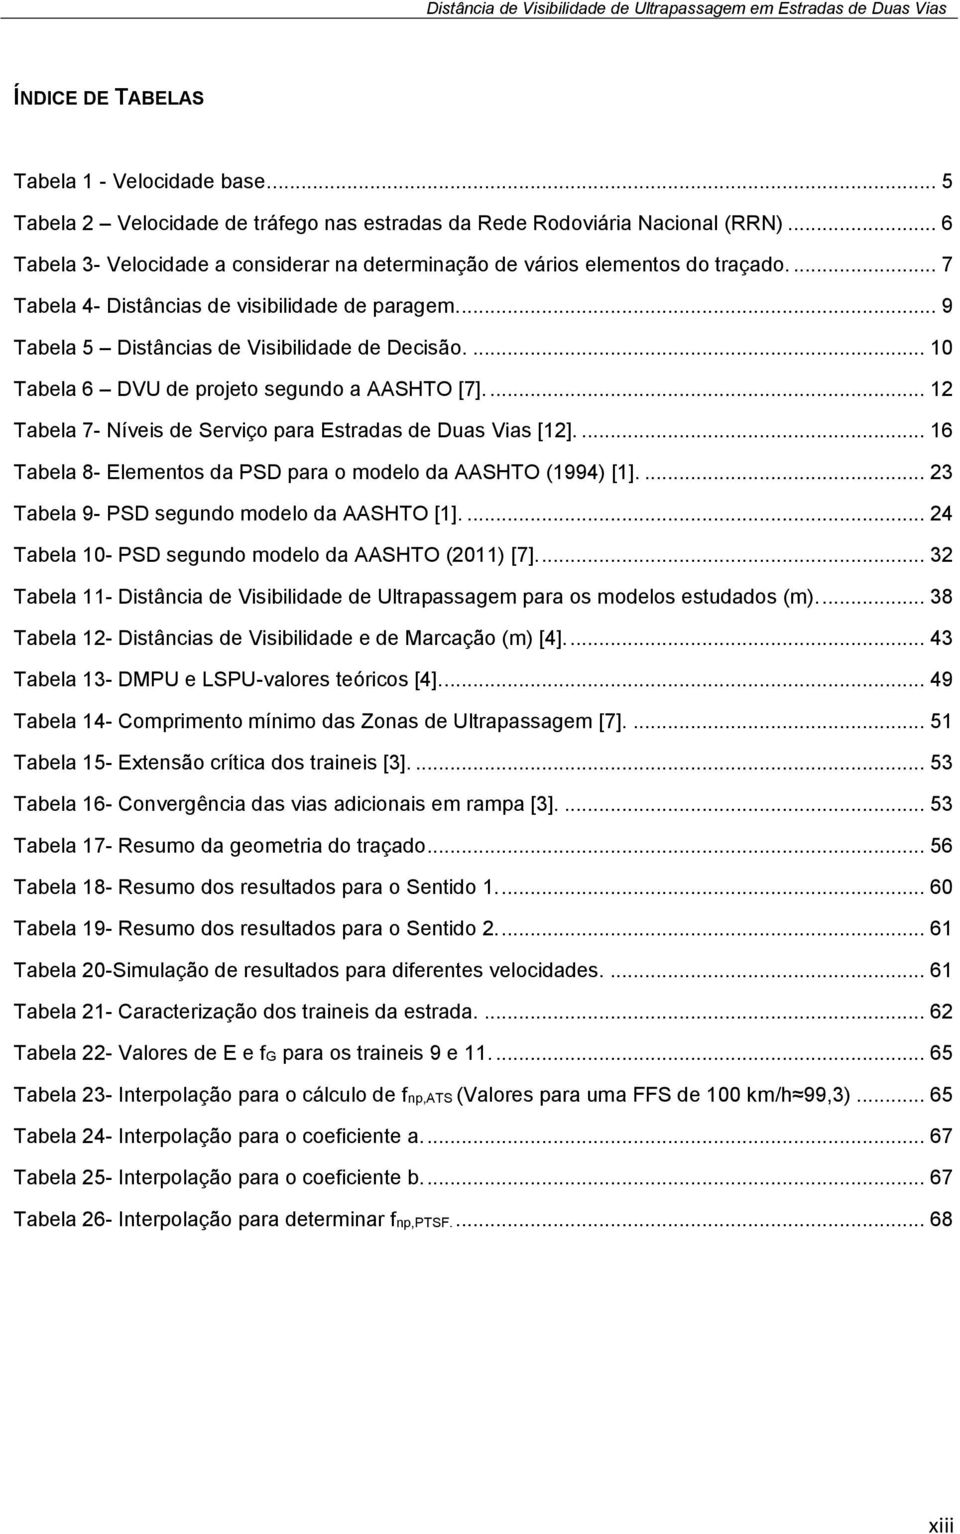 ... 10 Tabela 6 DVU de projeto segundo a AASHTO [7].... 12 Tabela 7- Níveis de Serviço para Estradas de Duas Vias [12].... 16 Tabela 8- Elementos da PSD para o modelo da AASHTO (1994) [1].